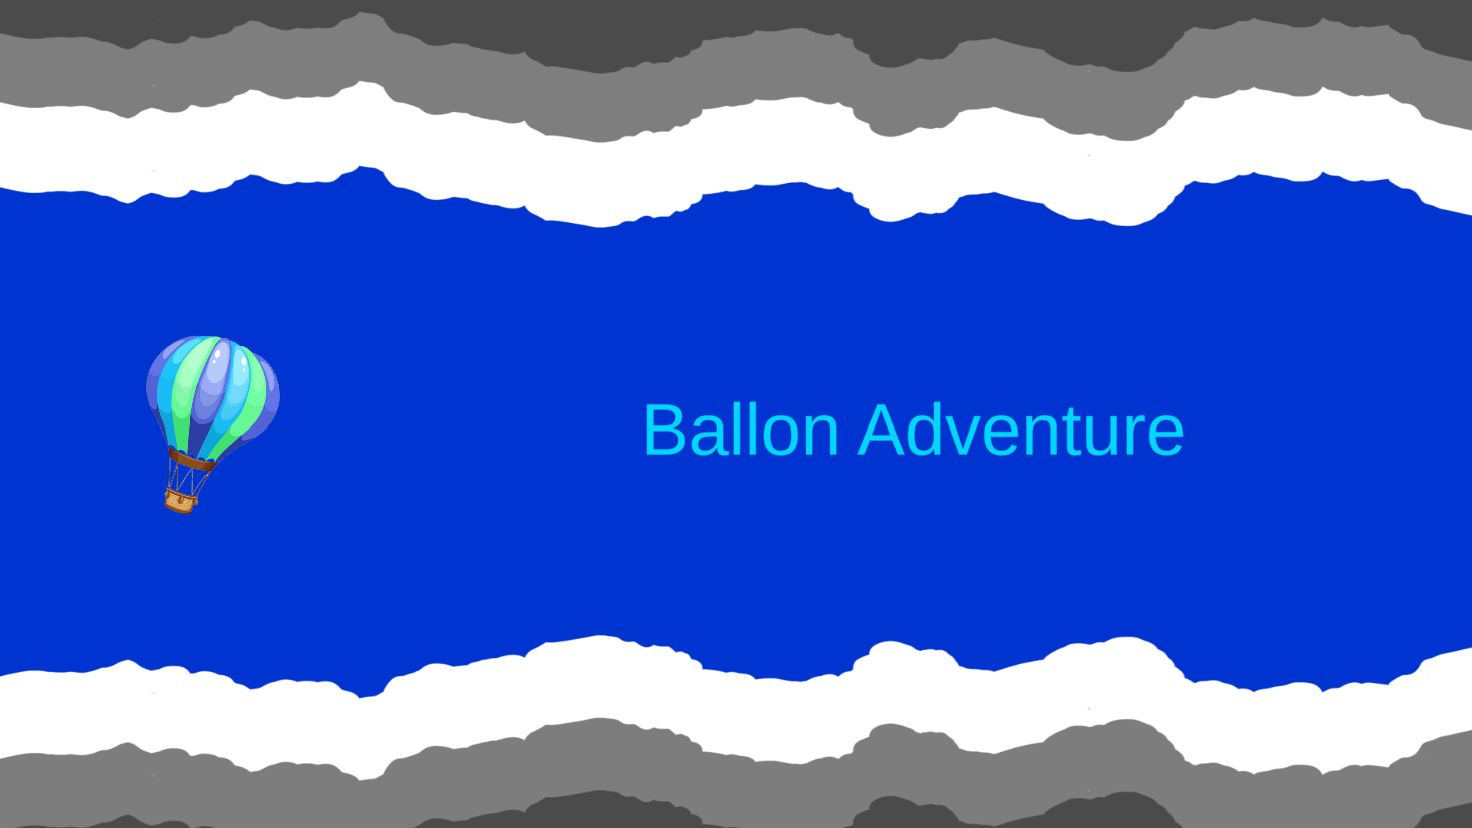 Balloon's Adventure